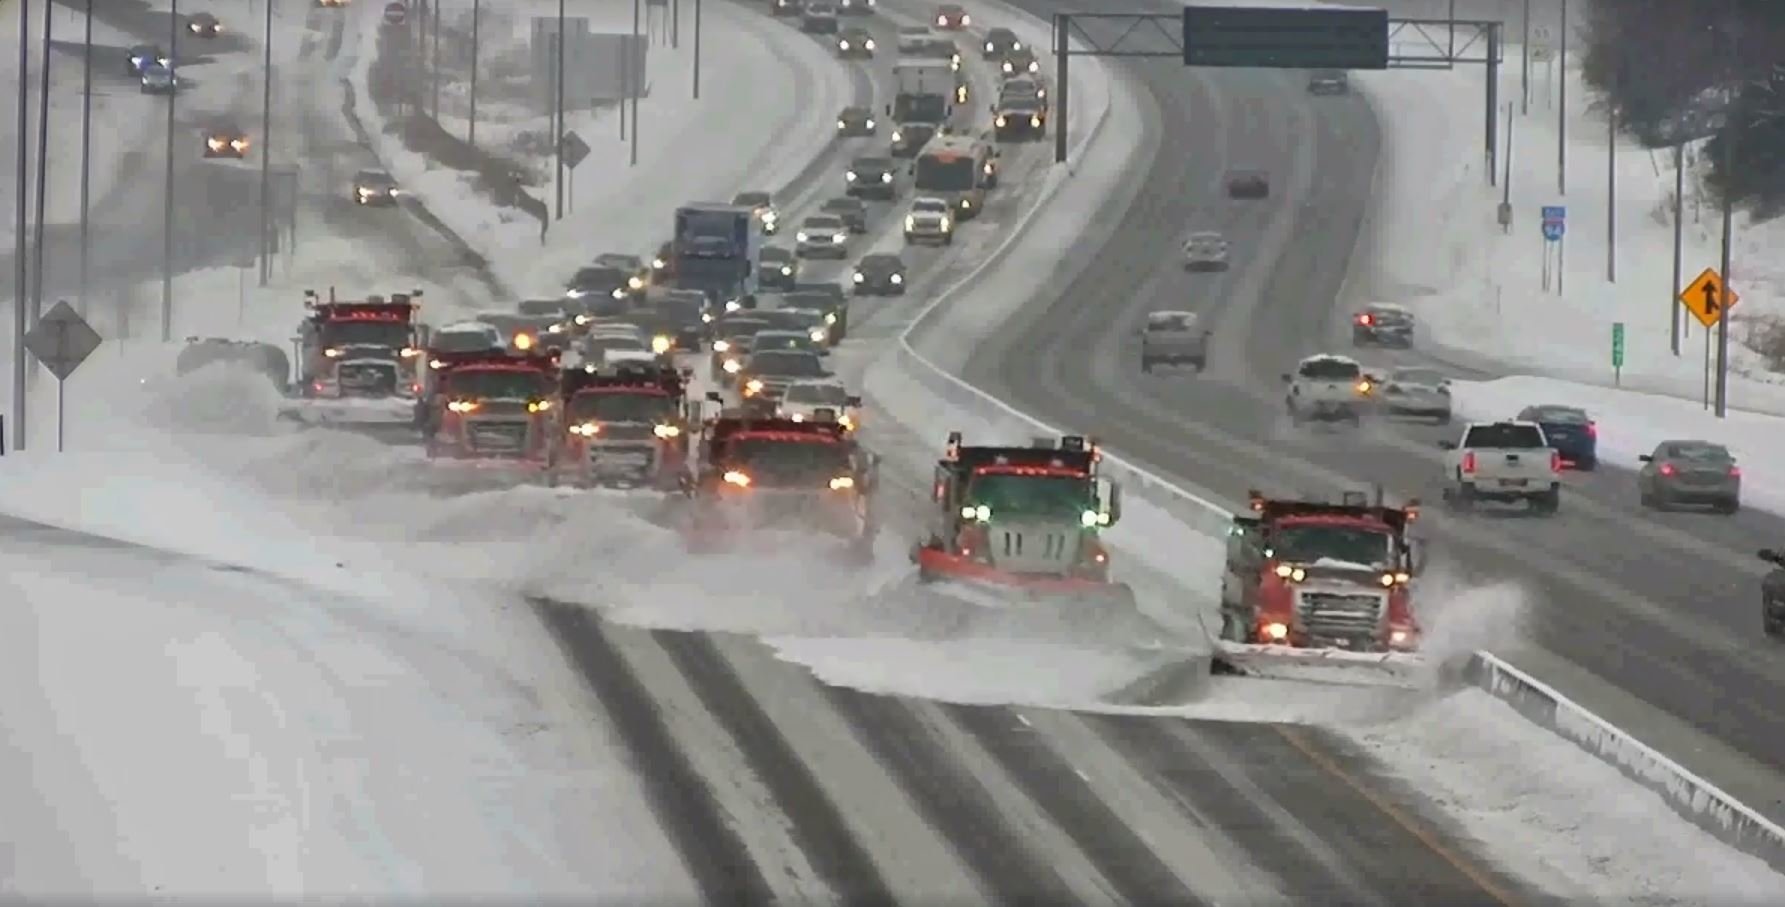 Silničáři v Minnesotě čistí dálnici hned šesti pluhy (Facebook/Minnesota Department of Transportation)